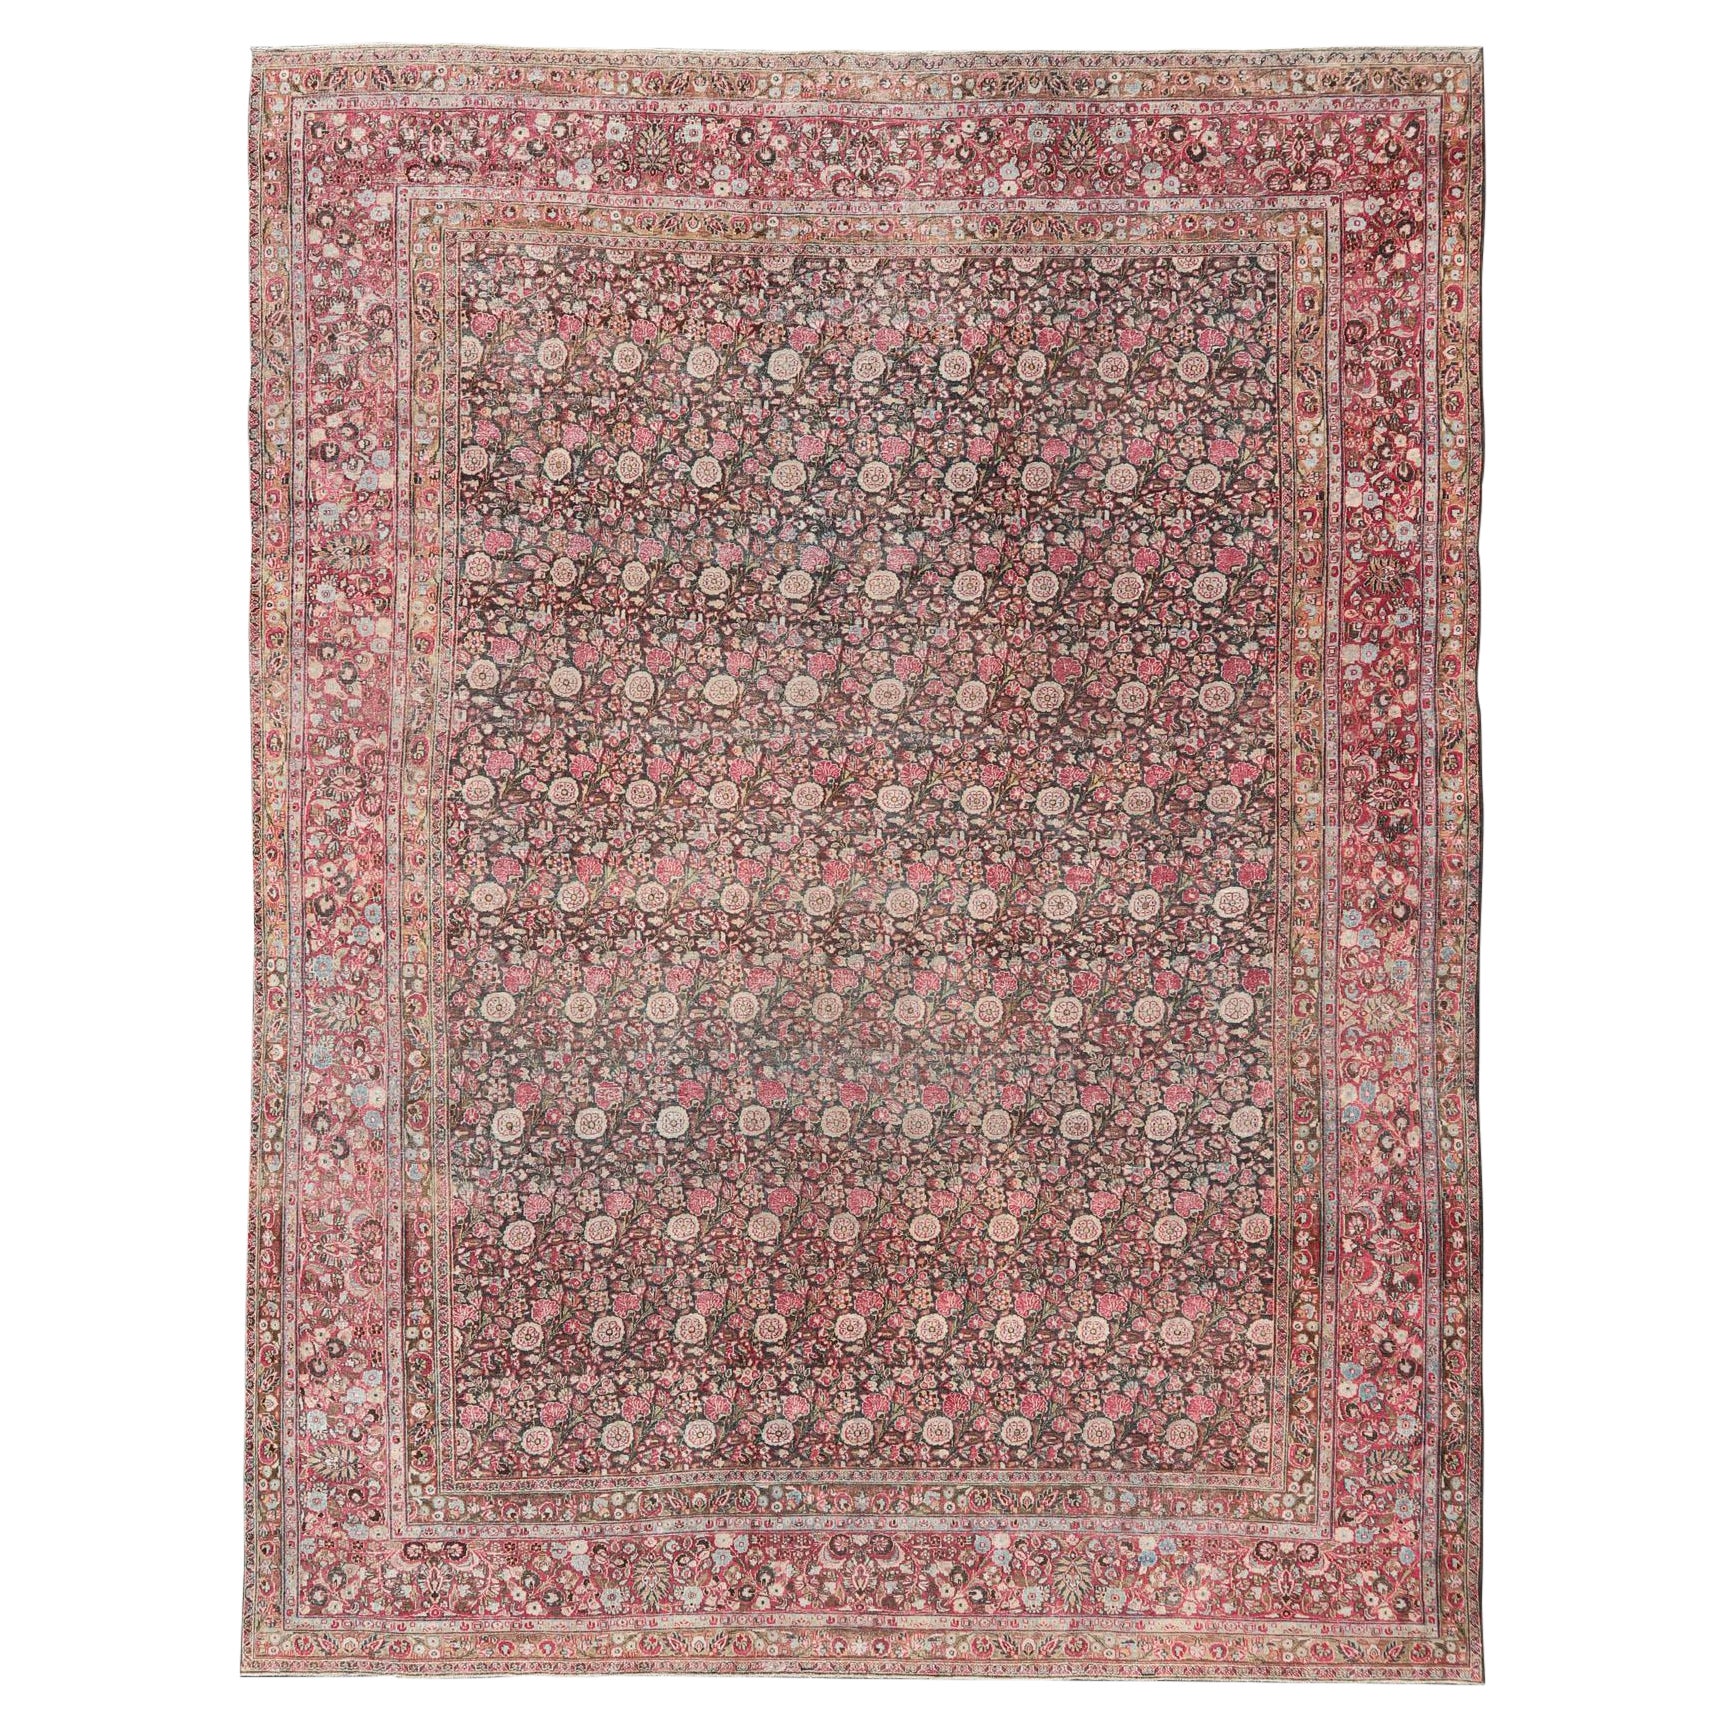 Antiker persischer Chorasan-Teppich mit Blumenmuster in Kohle, Braun und Rosenrot